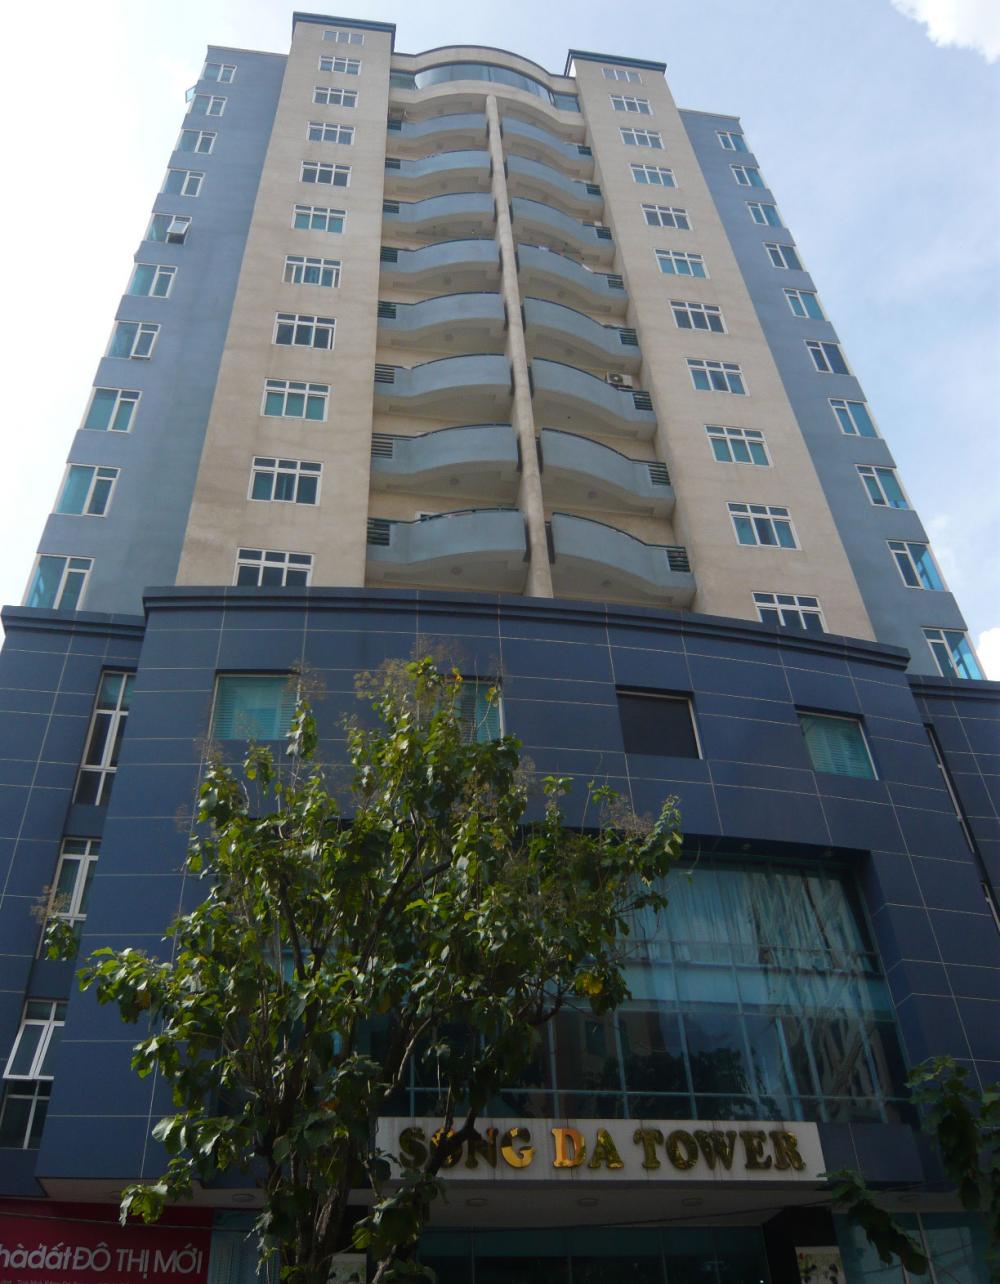 cho thuê căn hộ chung cư Sông Đà Tower Q3.120m2,3pn,nội thất đầy đủ,giá 18.5tr/th Lh 0932 204 185